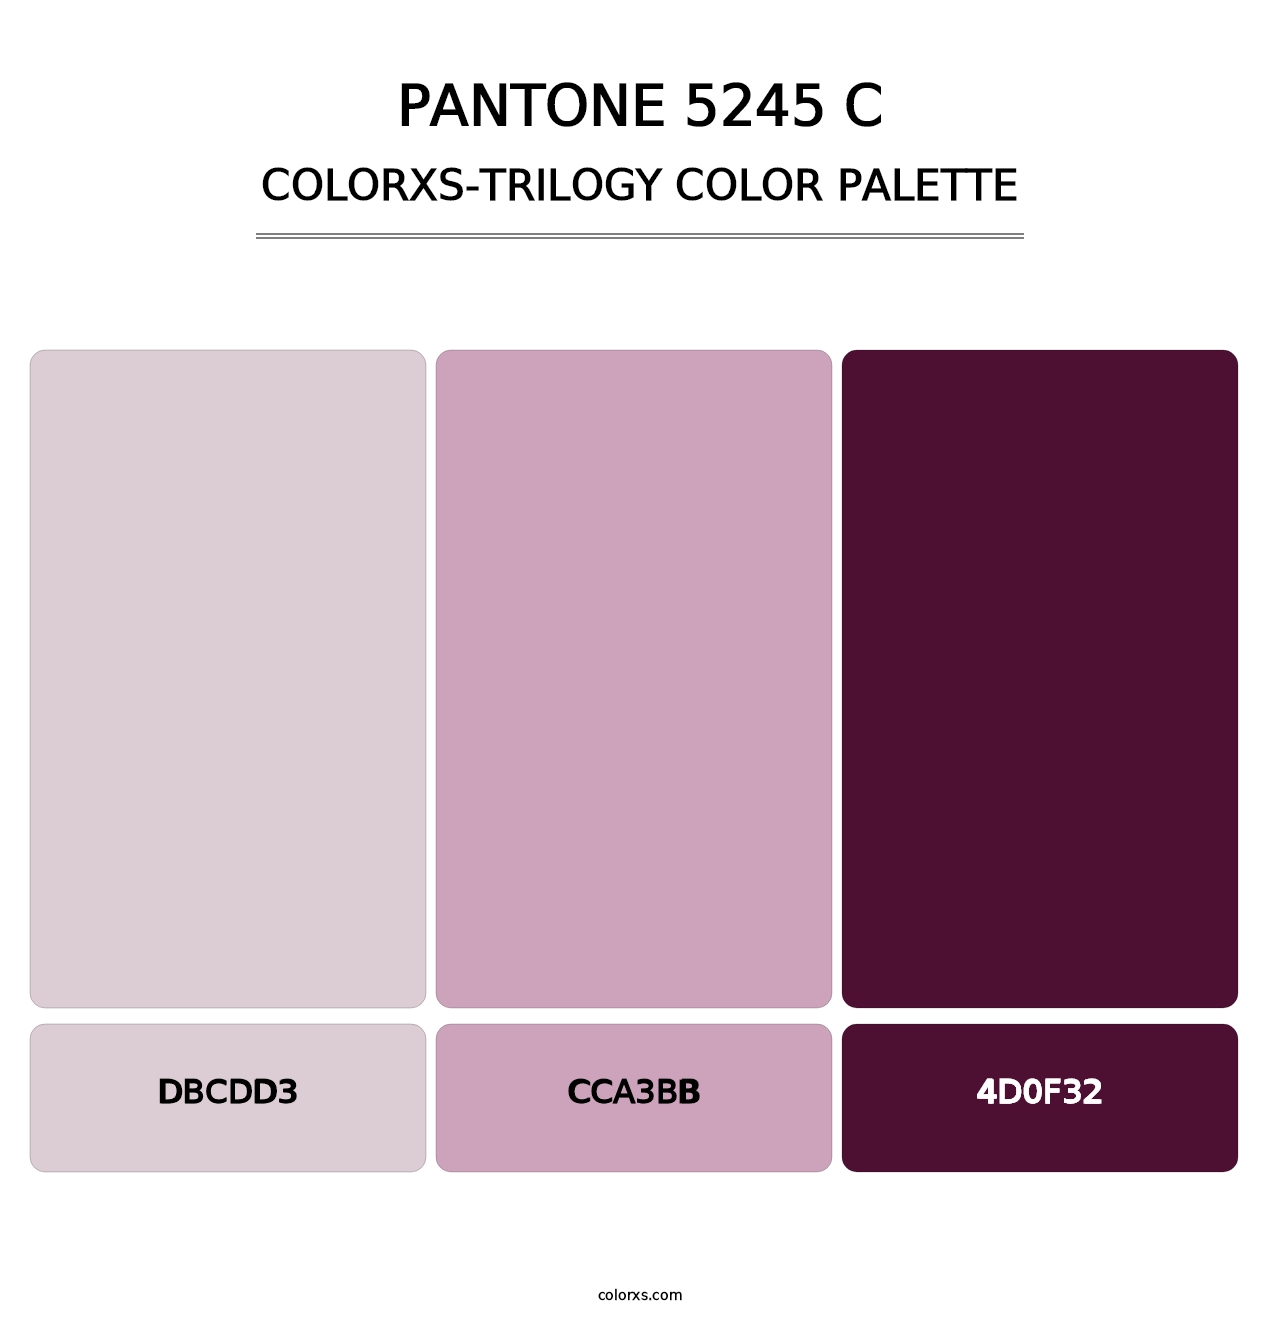 PANTONE 5245 C - Colorxs Trilogy Palette